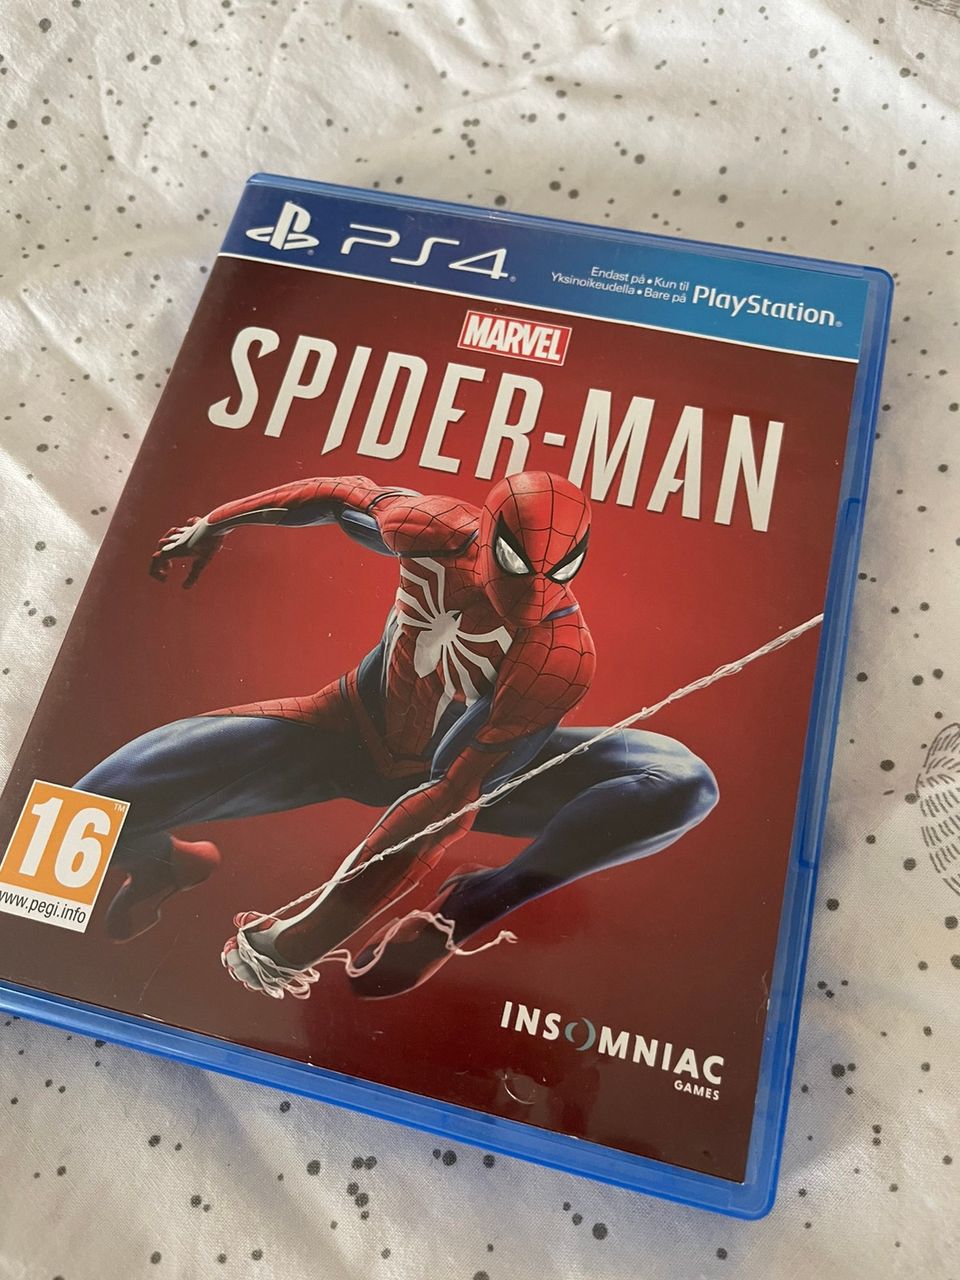 PS4: Spider-man